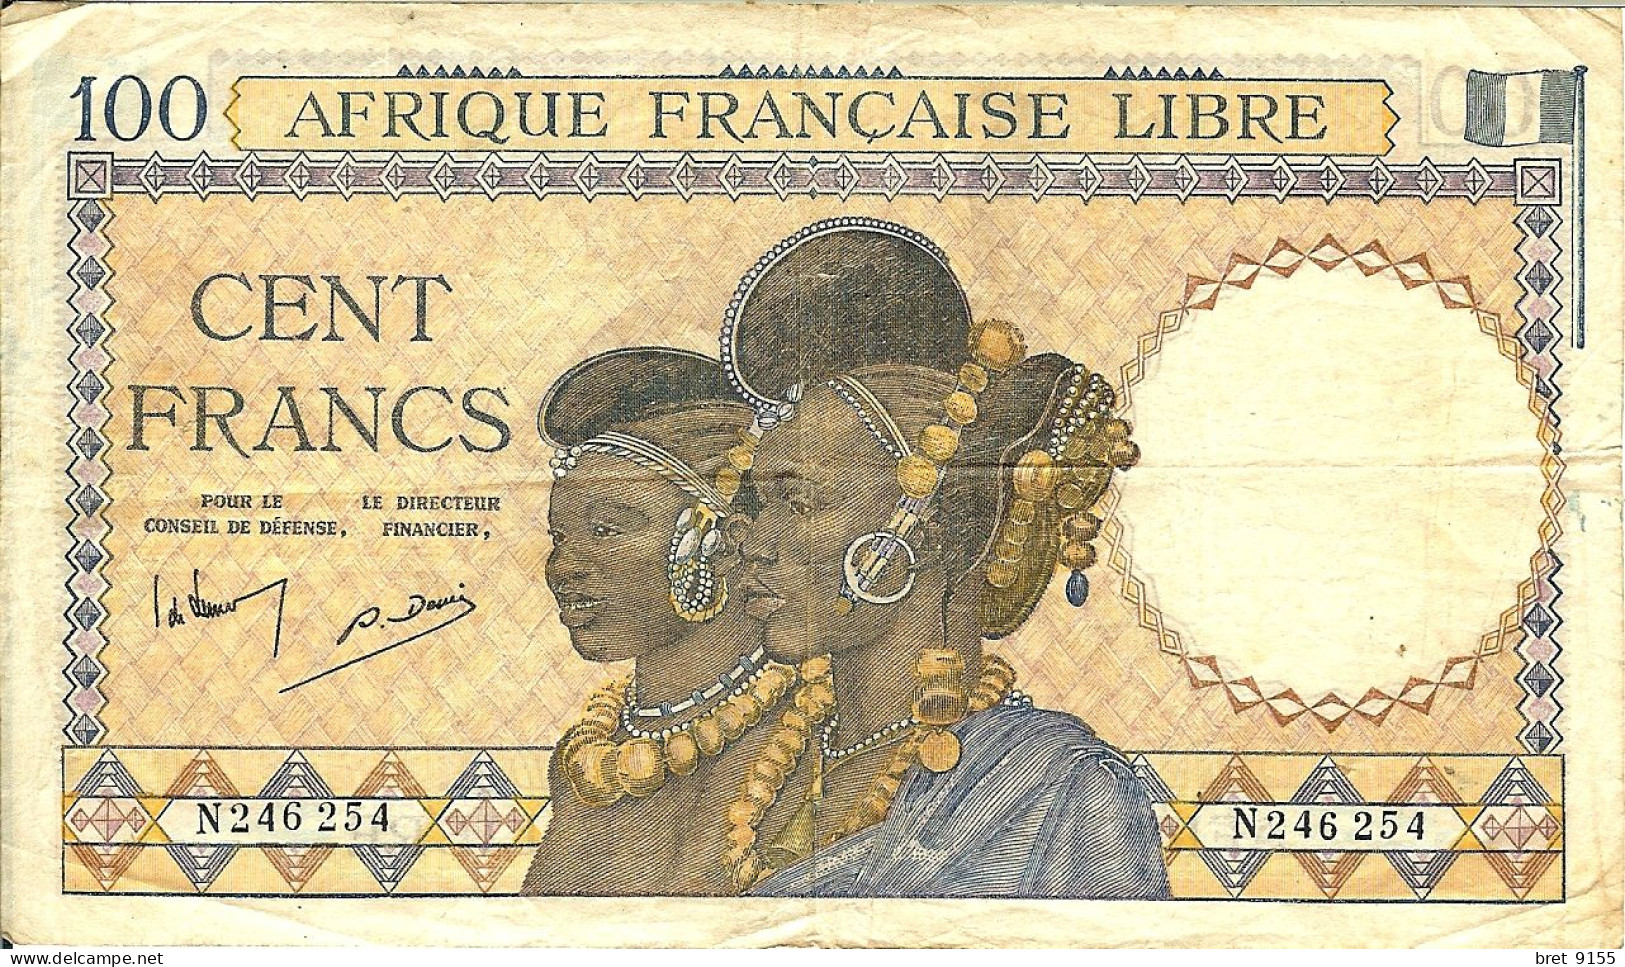 BILLET DE BANQUE AFRIQUE FRANCAISE LIBRE CONGO 100 FRANCS 1941 SERIE N246254 - Zuid-Afrika